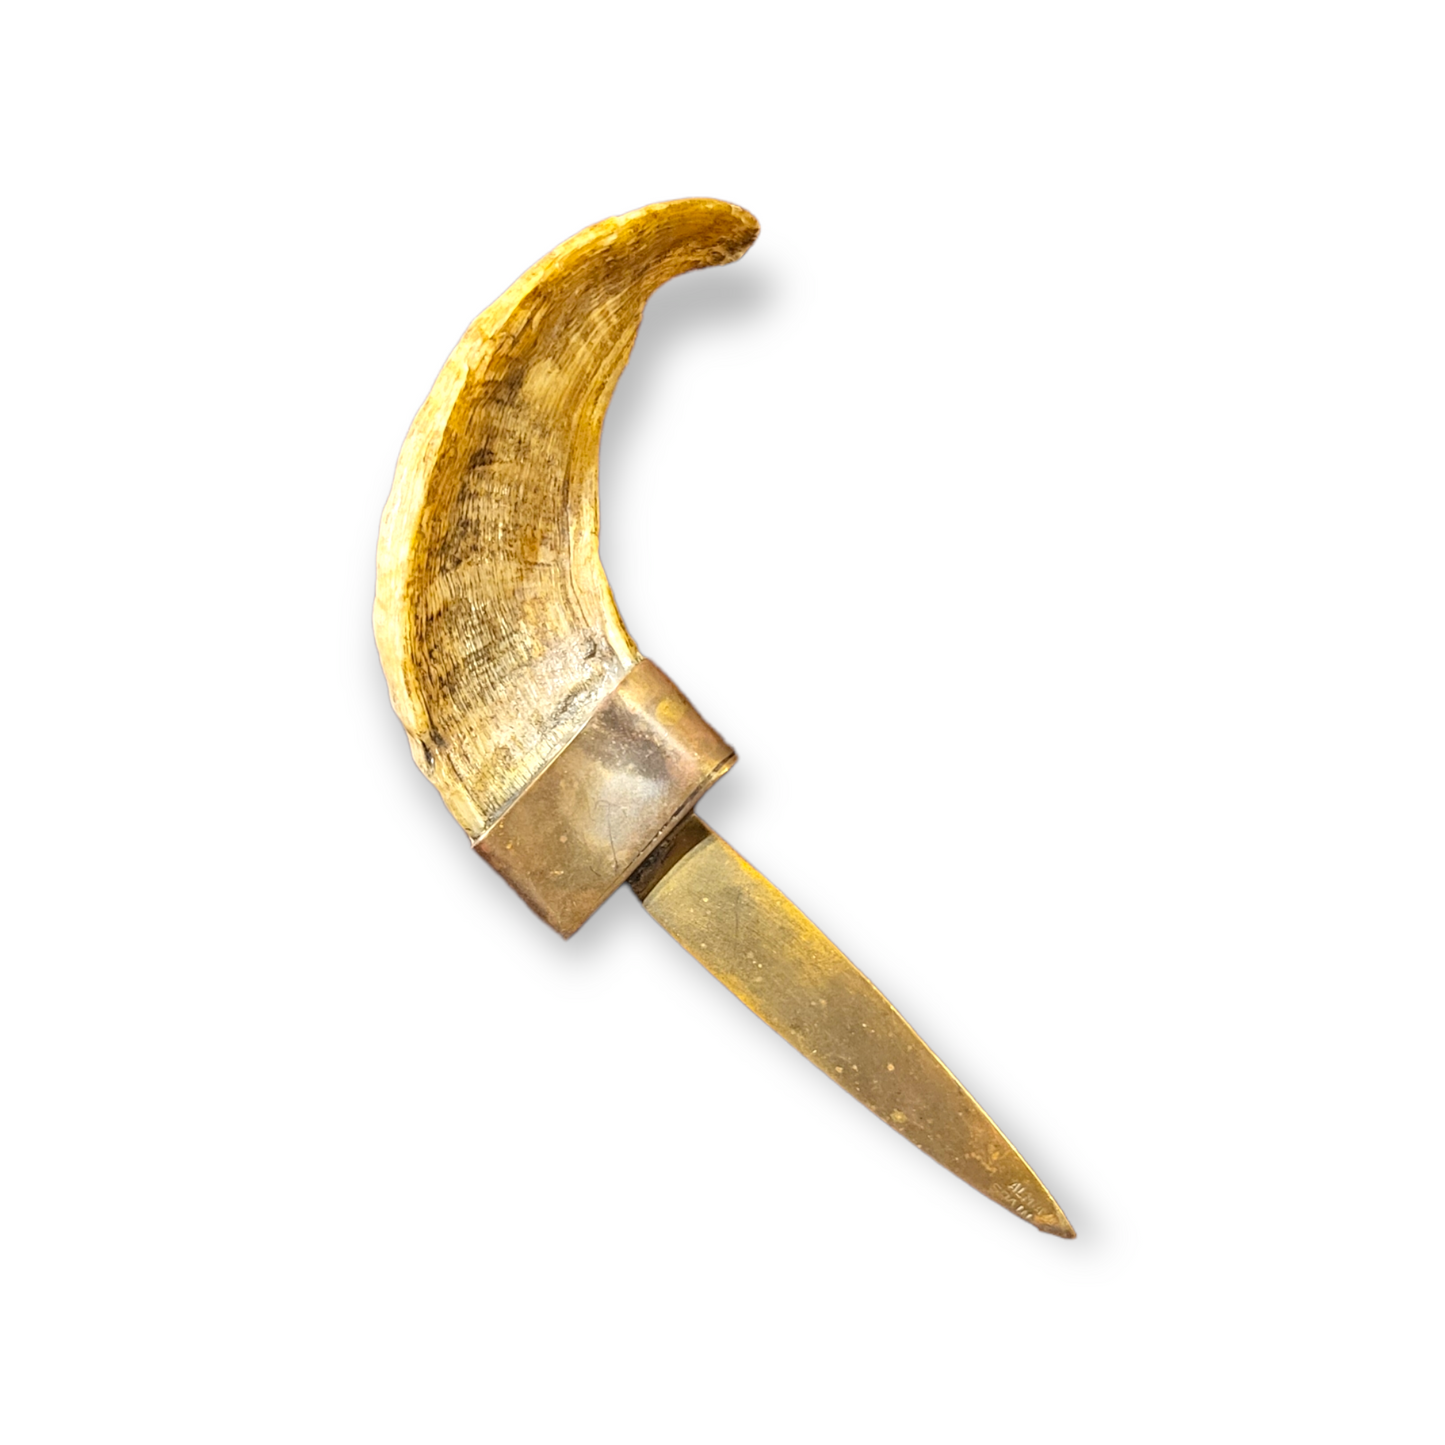 Vintage Rams Horn Letter Opener - Almazan, Spain